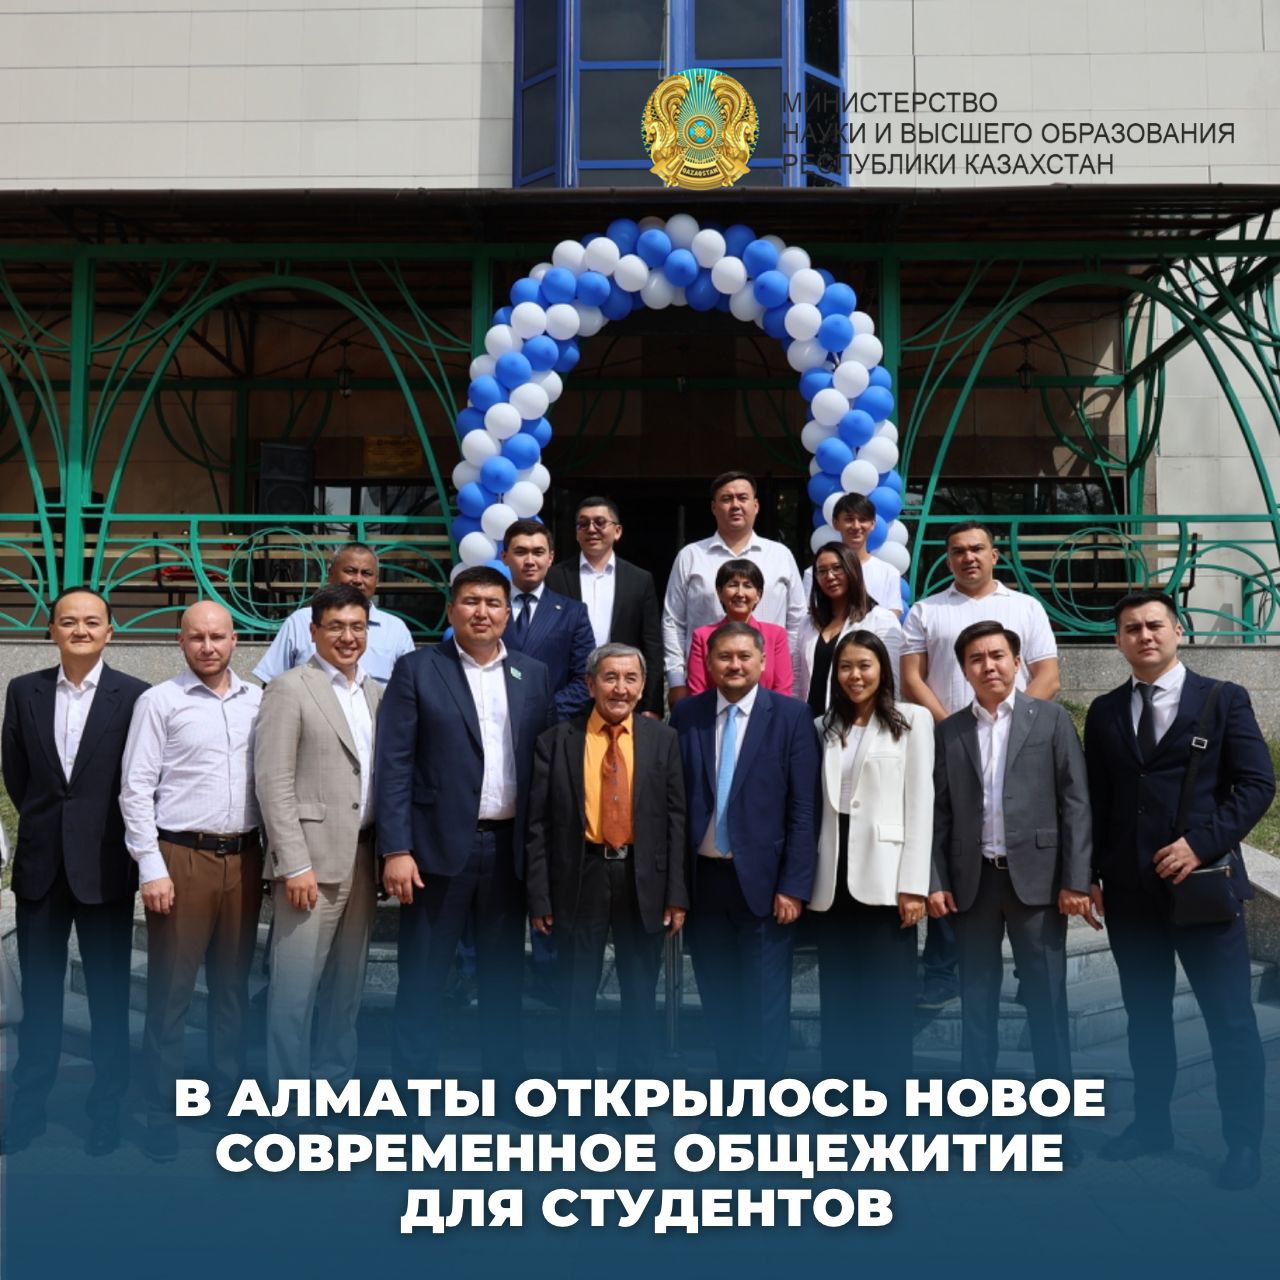 В Алматы открылось новое современное общежитие для студентов